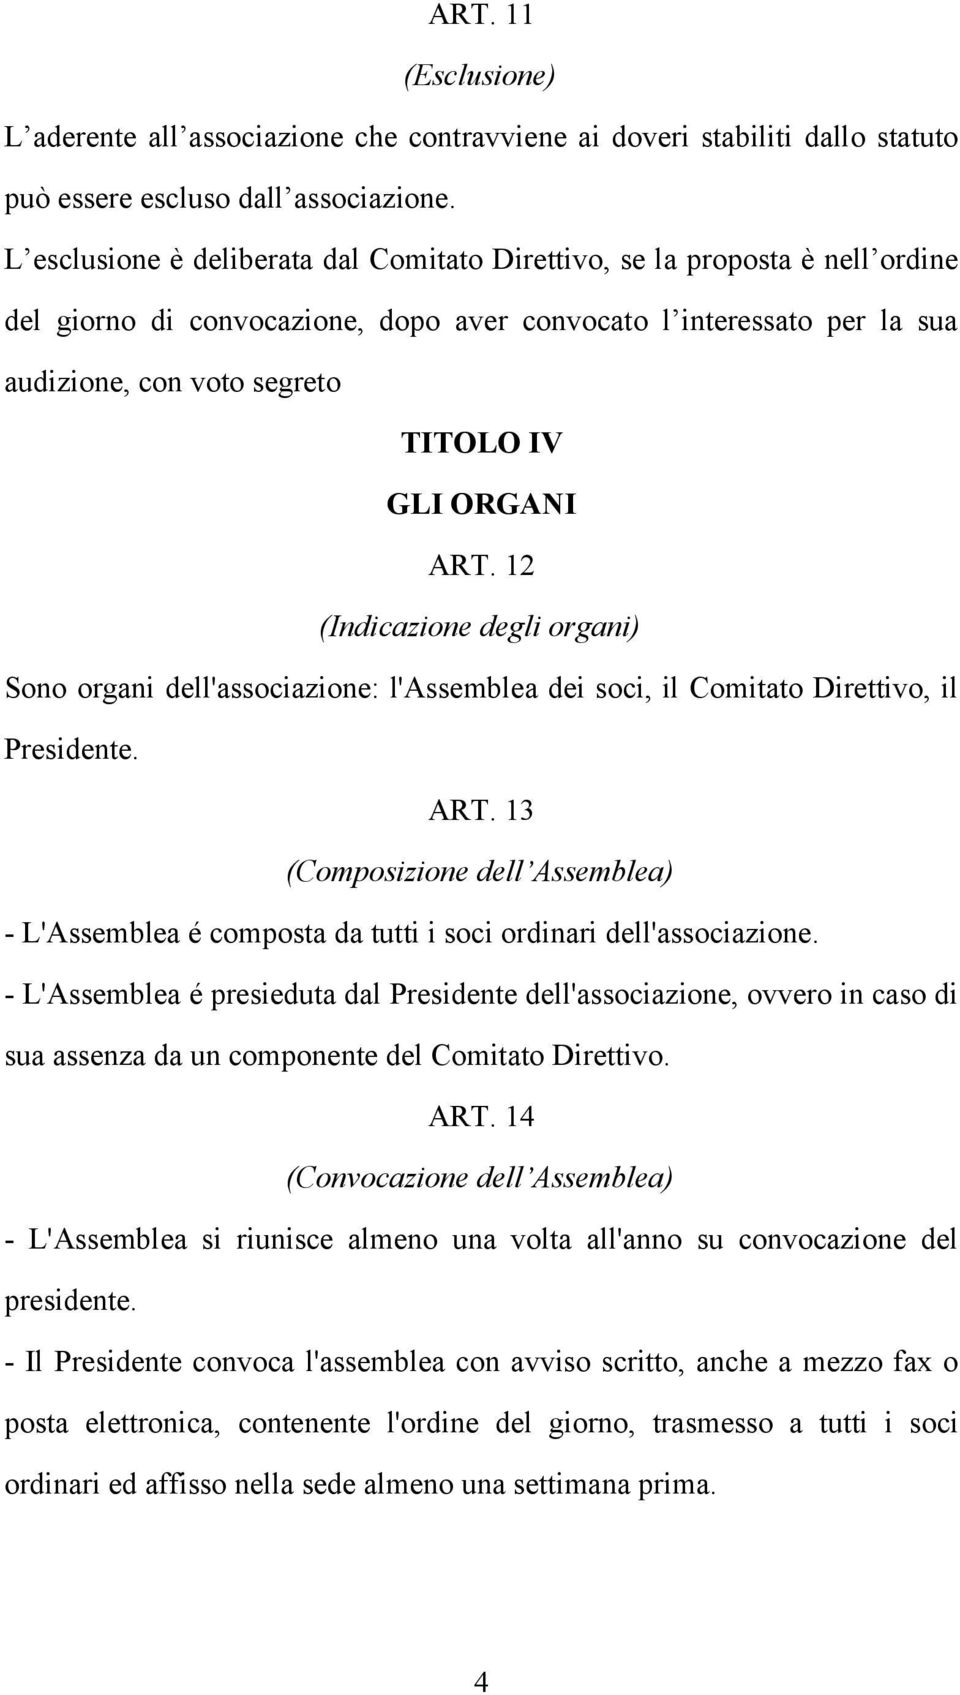 ORGANI ART. 12 (Indicazione degli organi) Sono organi dell'associazione: l'assemblea dei soci, il Comitato Direttivo, il Presidente. ART. 13 (Composizione dell Assemblea) - L'Assemblea é composta da tutti i soci ordinari dell'associazione.